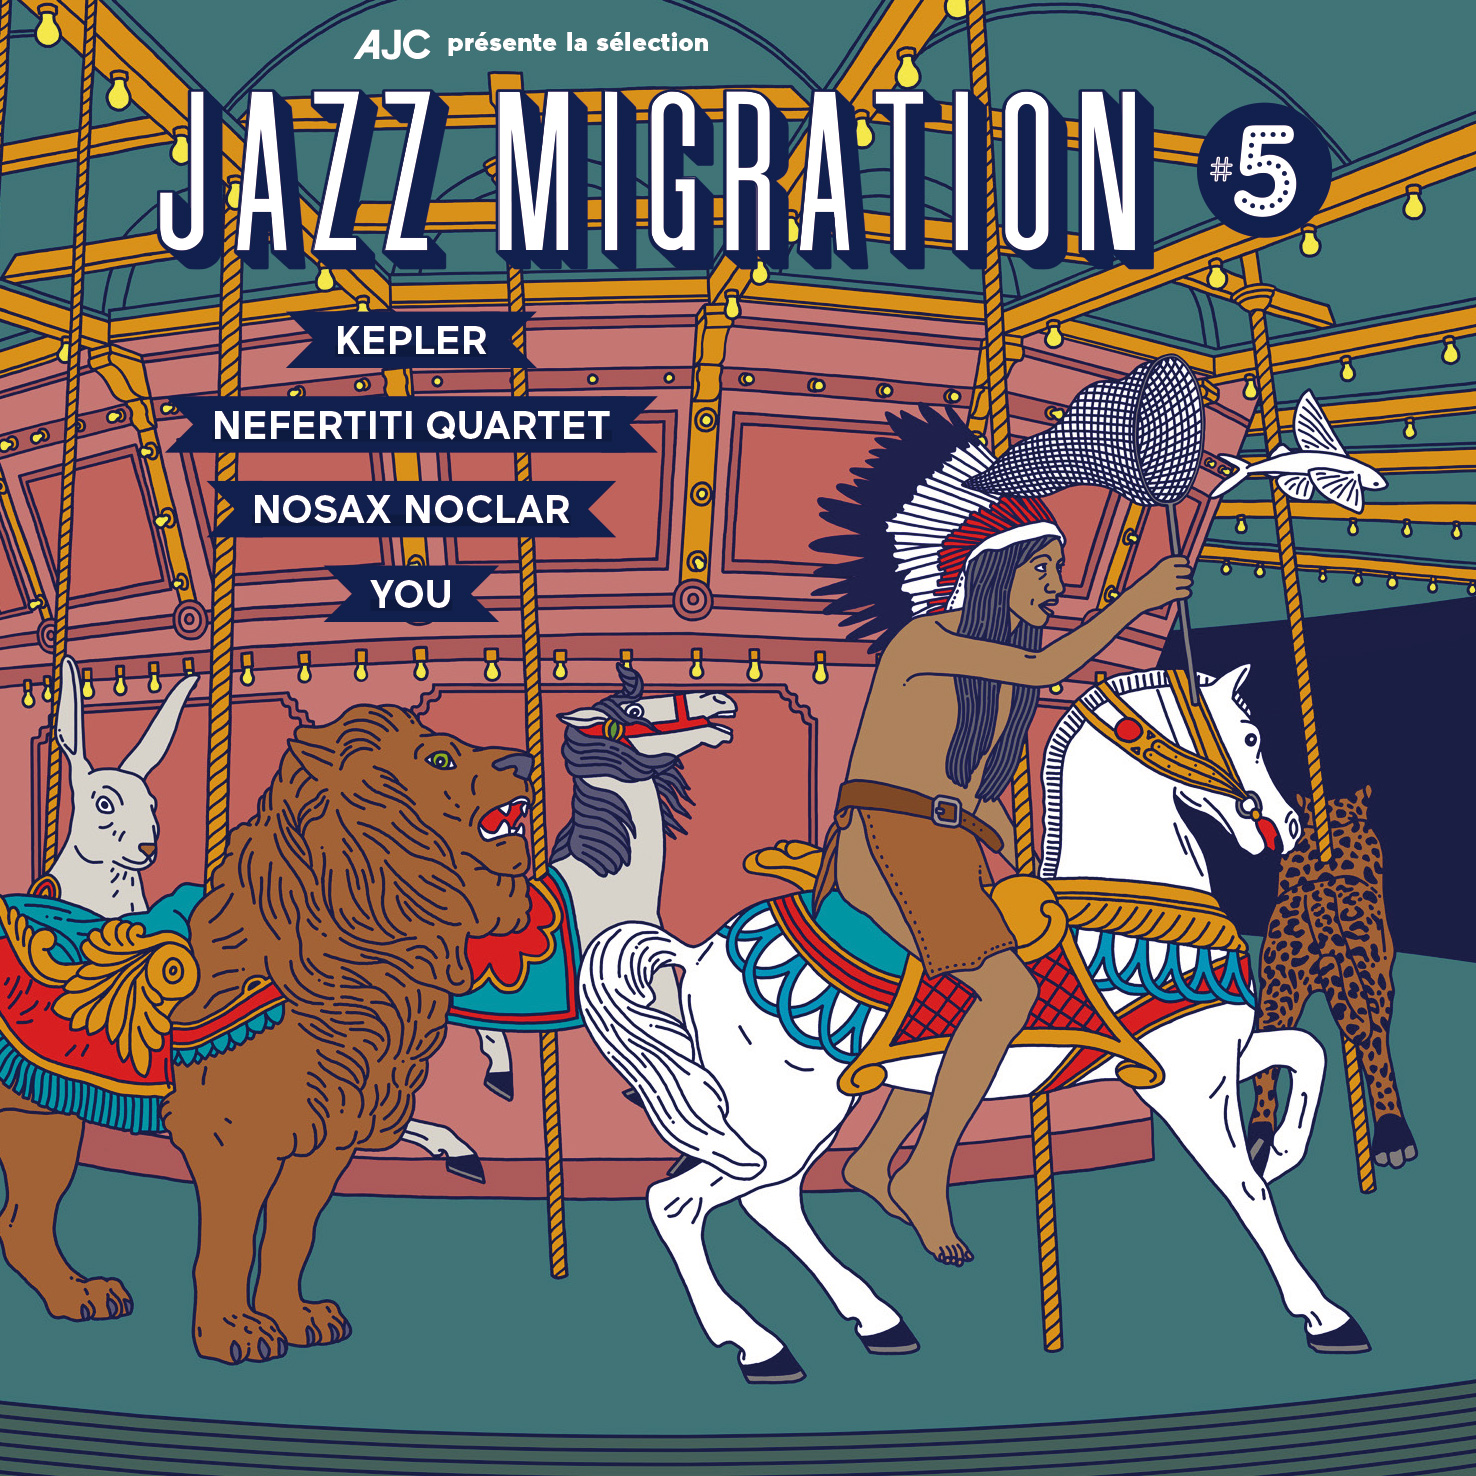 Lire la suite à propos de l’article Caravan : Émission spéciale Jazz Migration